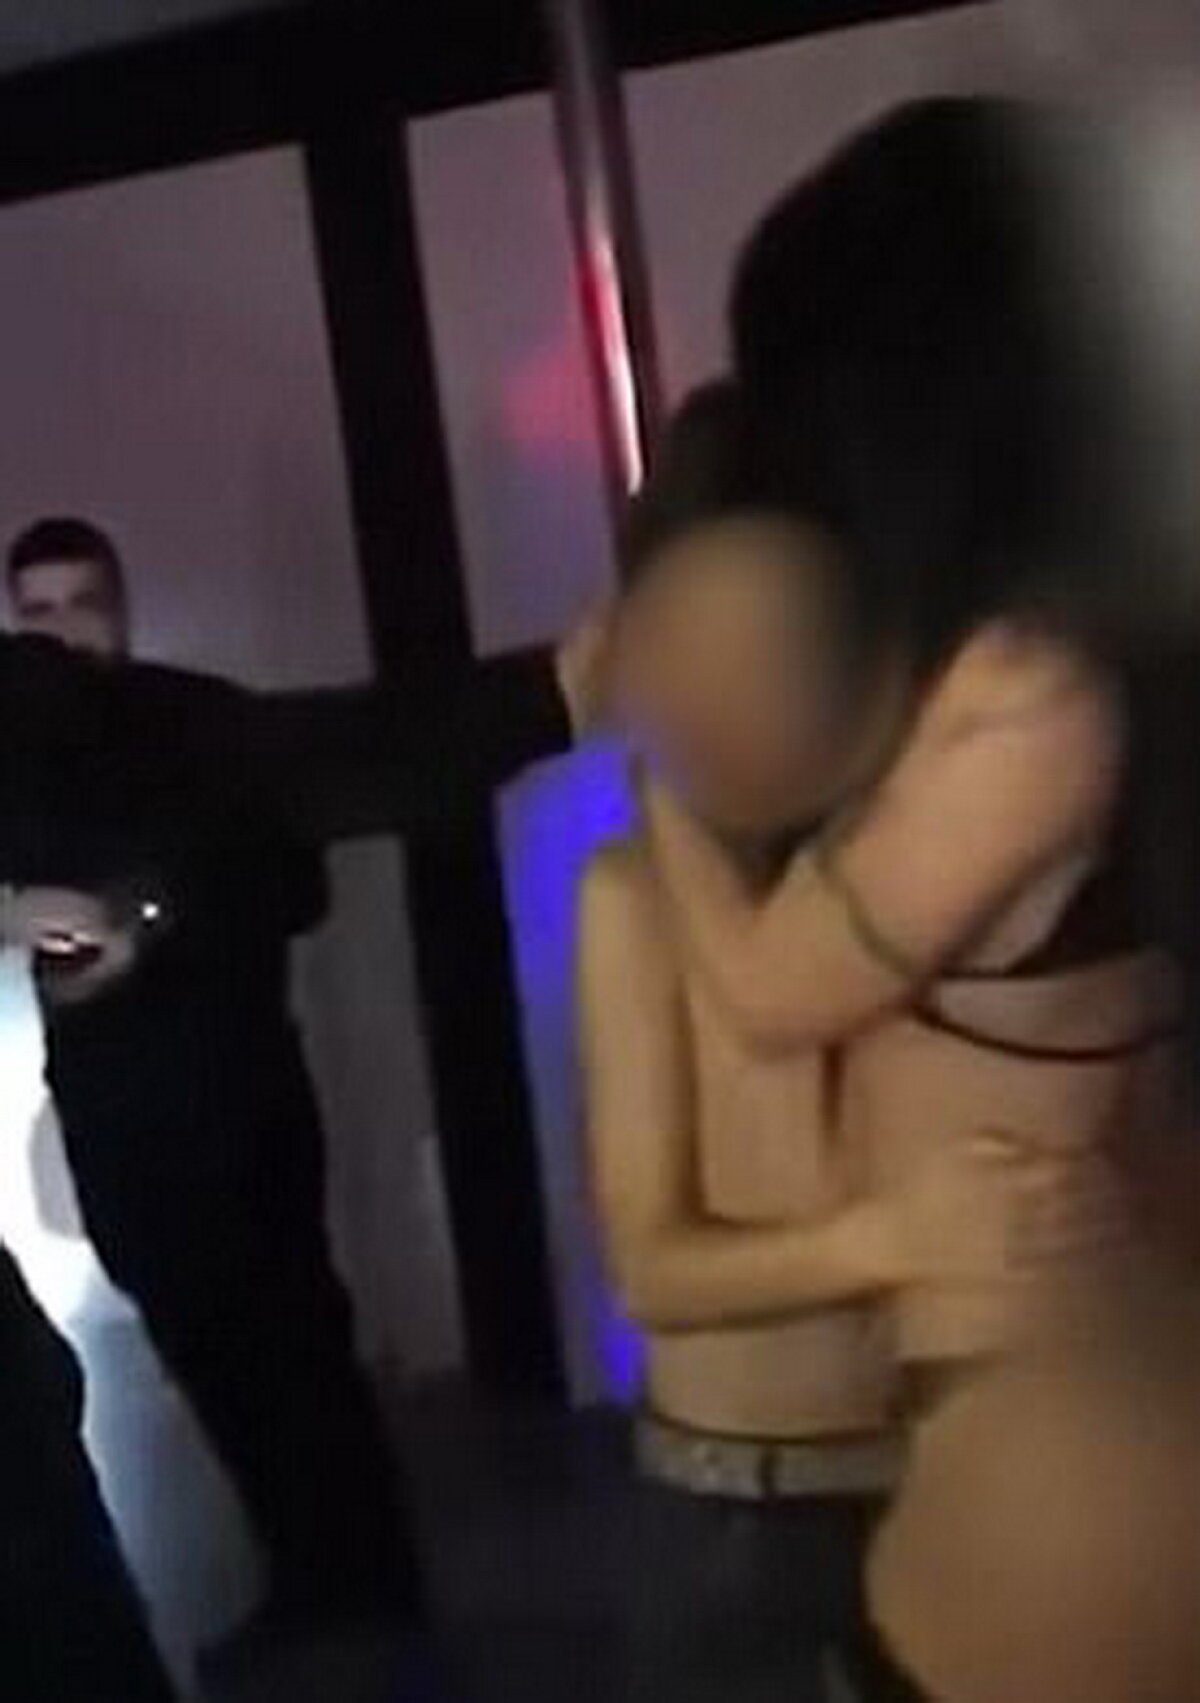 VIDEO Imagini scandaloase! Stripperițe aduse la aniversarea unui copil de 13 ani, chiar de tatăl său